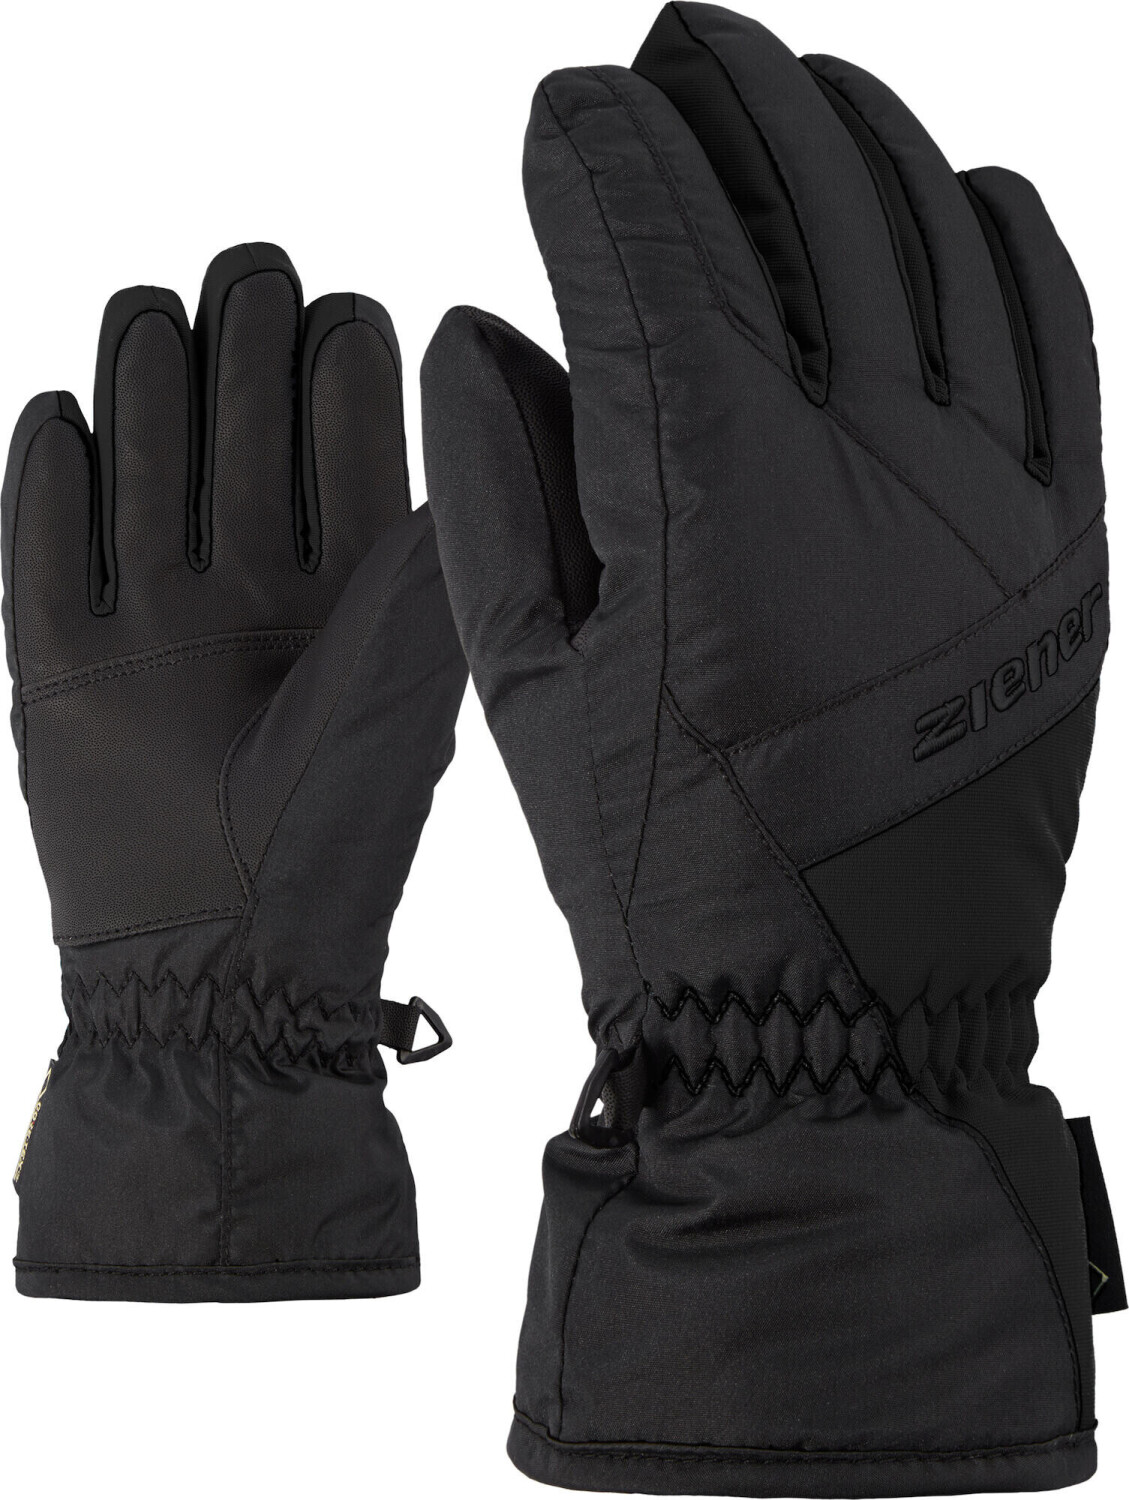 Ziener Linard GTX Glove Junior (801908) black ab 24,55 € | Preisvergleich  bei